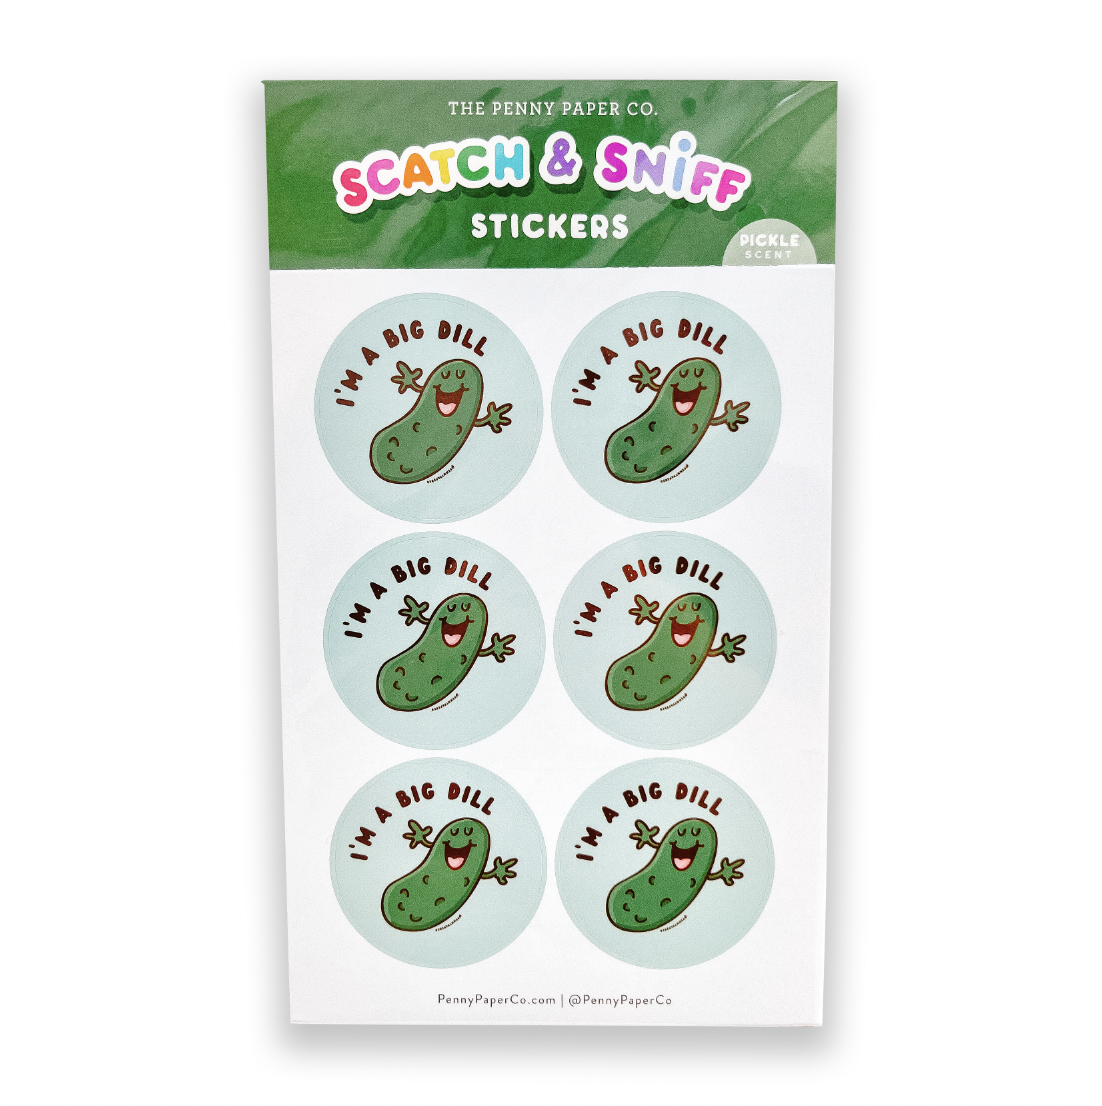 Scratch & Sniff Mini Stickers